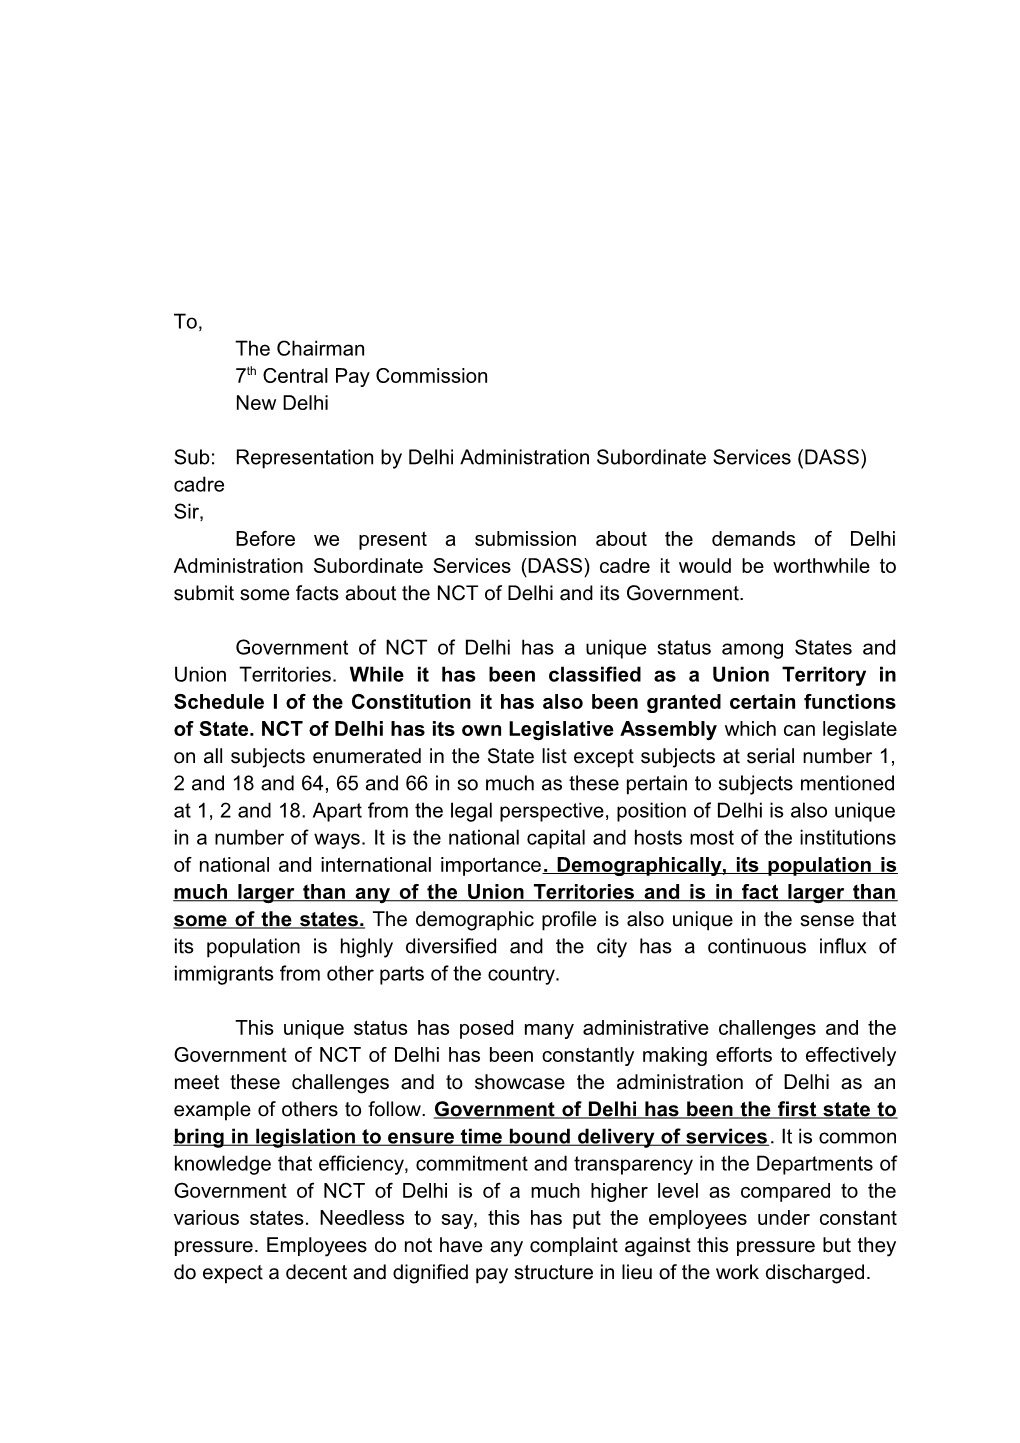 Sub:Representation by Delhi Administration Subordinate Services (DASS) Cadre